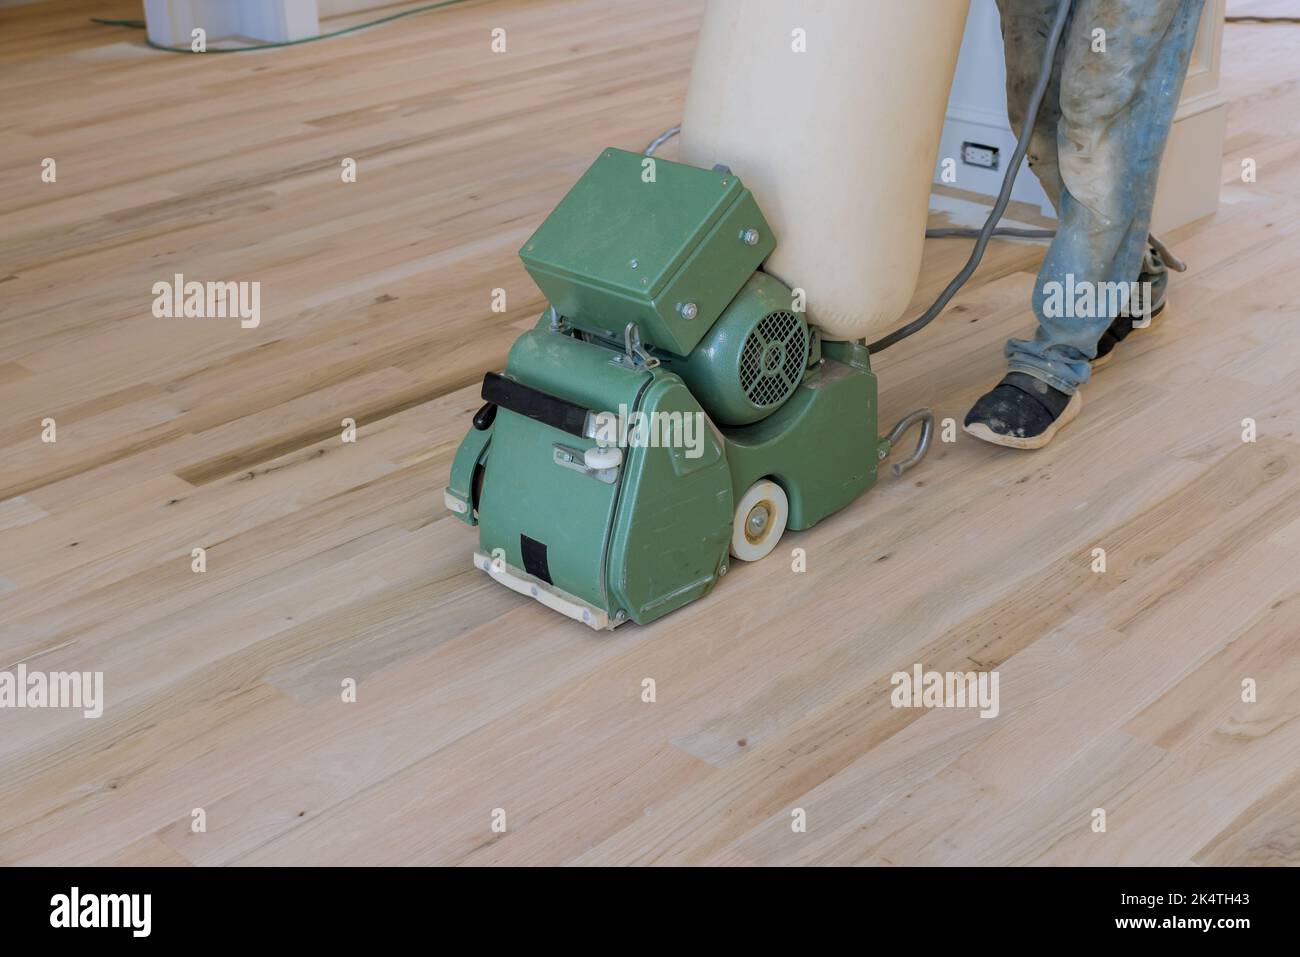 Mit einem Bodenschleifer mahlt ein neuer Hausbesitzer in einem neu errichteten Haus einen Holzparkettboden, wobei das Schleifrad als Werkzeug verwendet wird Stockfoto